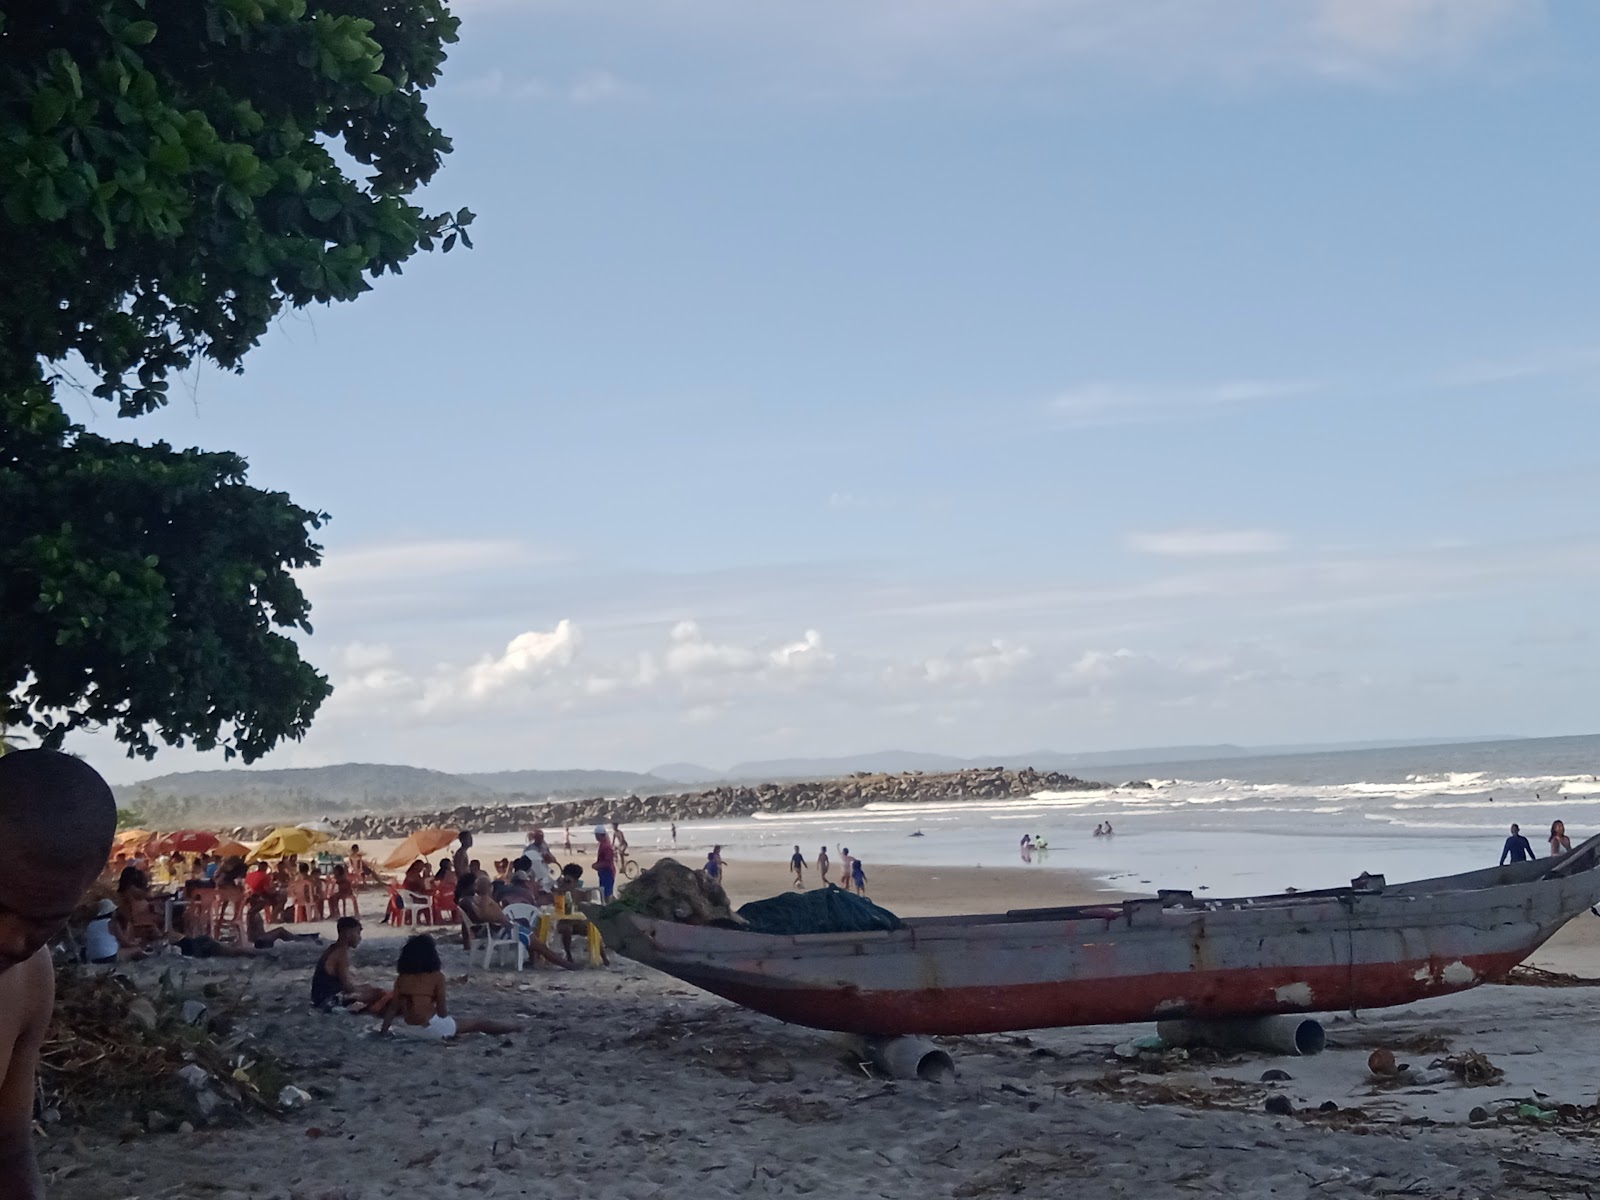 Foto af Praia Do Sao Miguel - populært sted blandt afslapningskendere